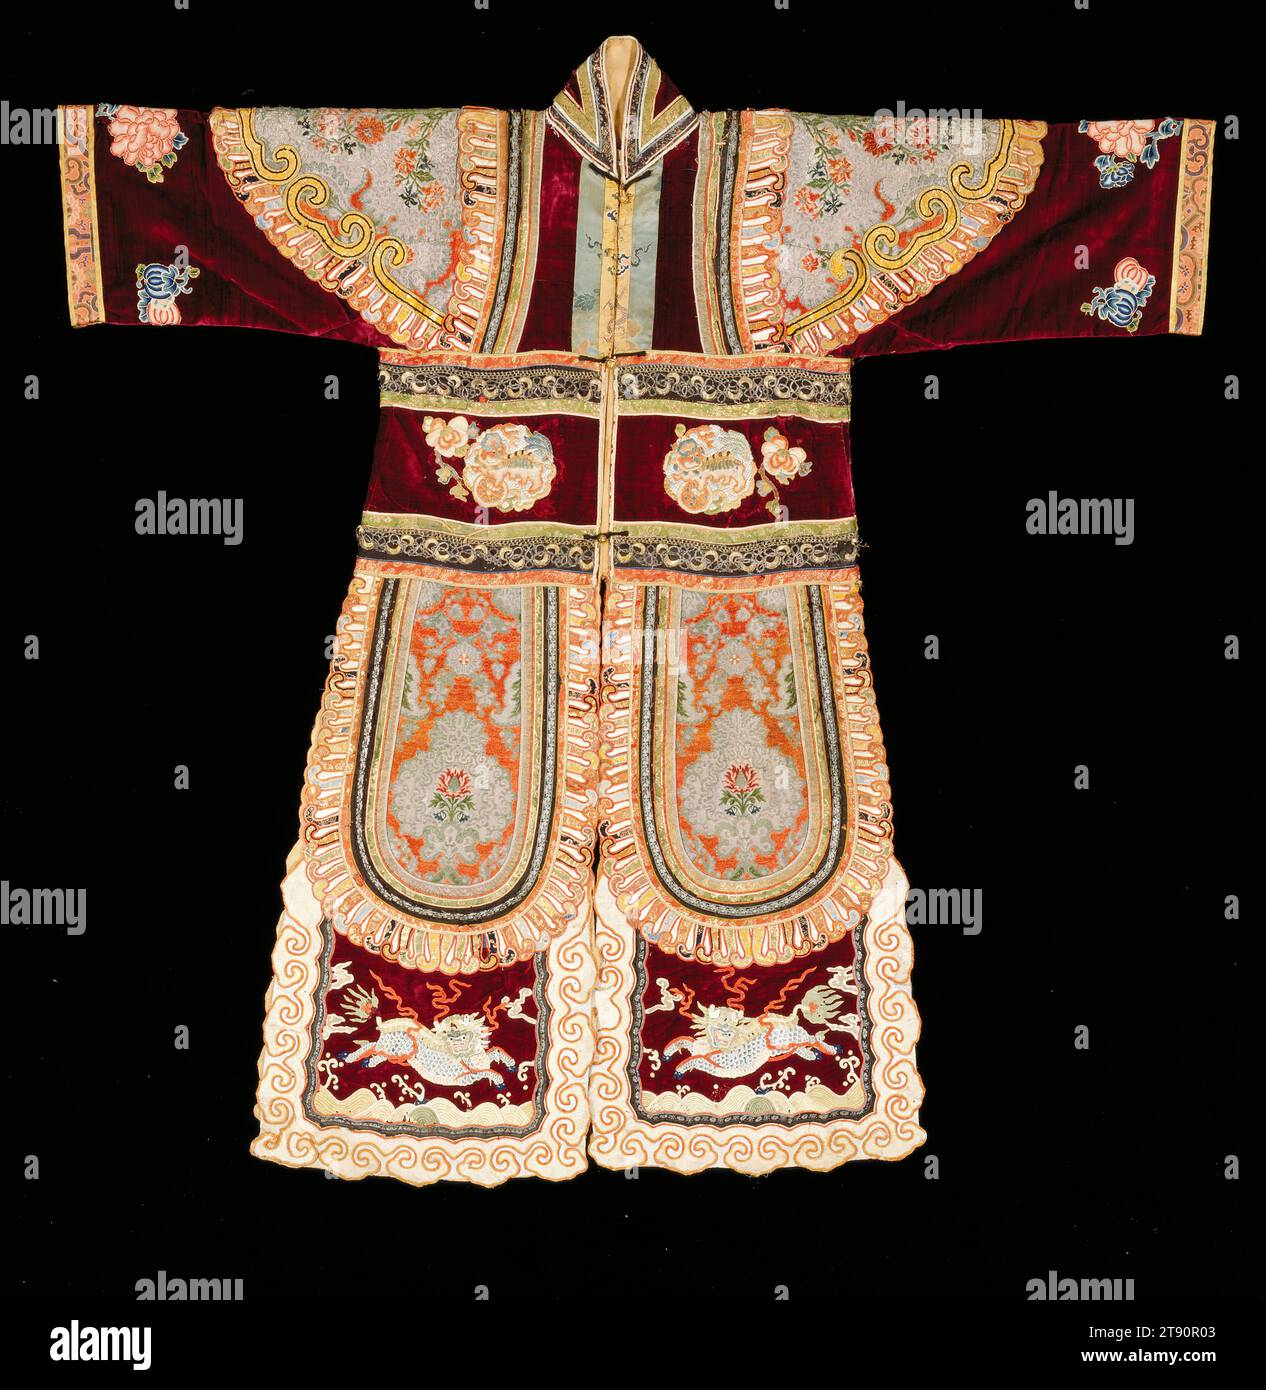 Robe théâtrale, 1662-1722, L.56 po., soie, Chine, du 17e au 18e siècle, contrairement au théâtre occidental, dans lequel les pièces sont généralement classées comme tragiques ou comiques, les pièces chinoises sont généralement étiquetées civiles (wenxi) ou militaires (wuxi). Cette robe aurait été utilisée dans une pièce militaire, imitant une armure protectrice. Contrairement aux vrais vêtements militaires, cependant, cette robe est colorée et fortement brodée avec des motifs floraux, des images taoïstes et des qilins (créatures licornes avec des corps ressemblant à des dragons et des sabots biongueux) dans un paysage céleste Banque D'Images